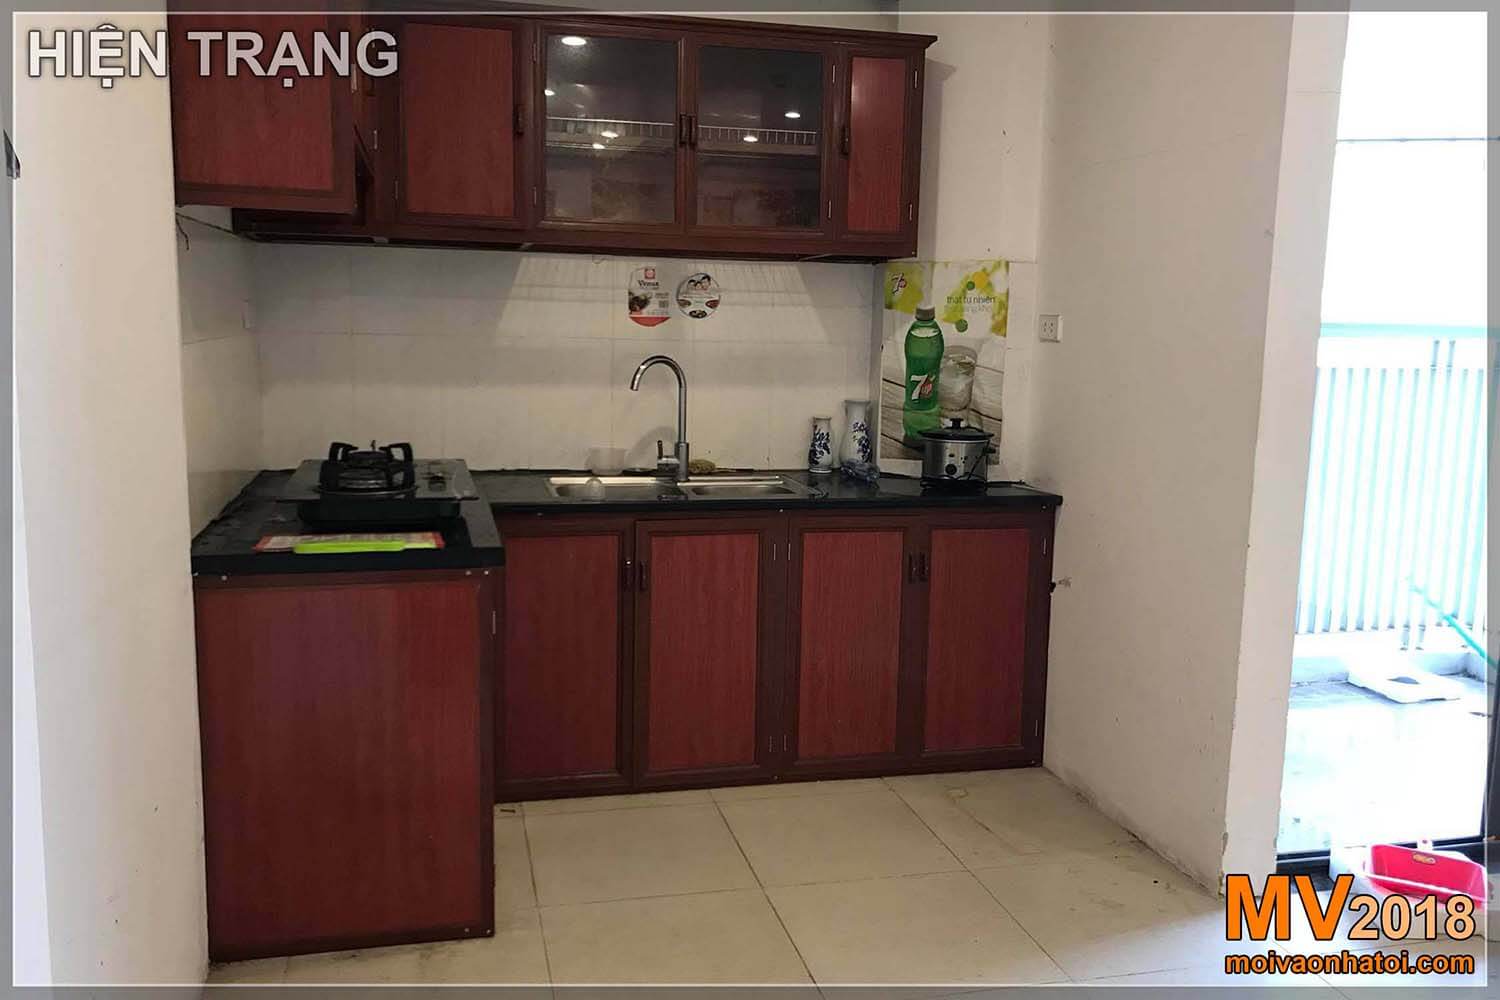 สถานการณ์ปัจจุบันของห้องครัวในเขตเมือง Dang Xa Gia Lam